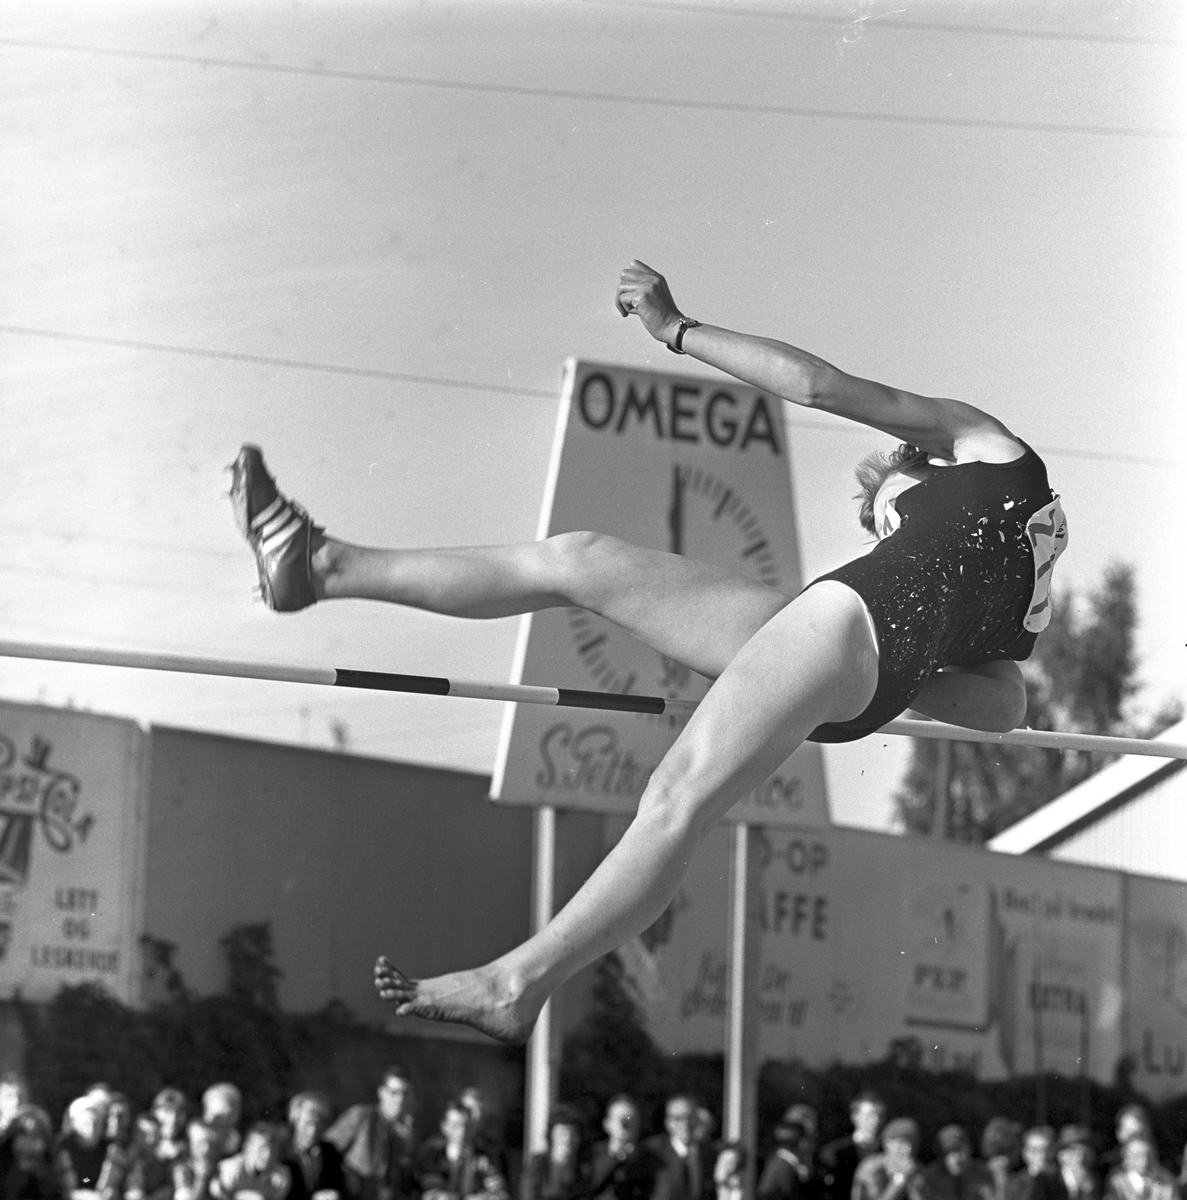 Serie. Sport. NM i friidrett på Gjøvik.
Fotografert 1964.
